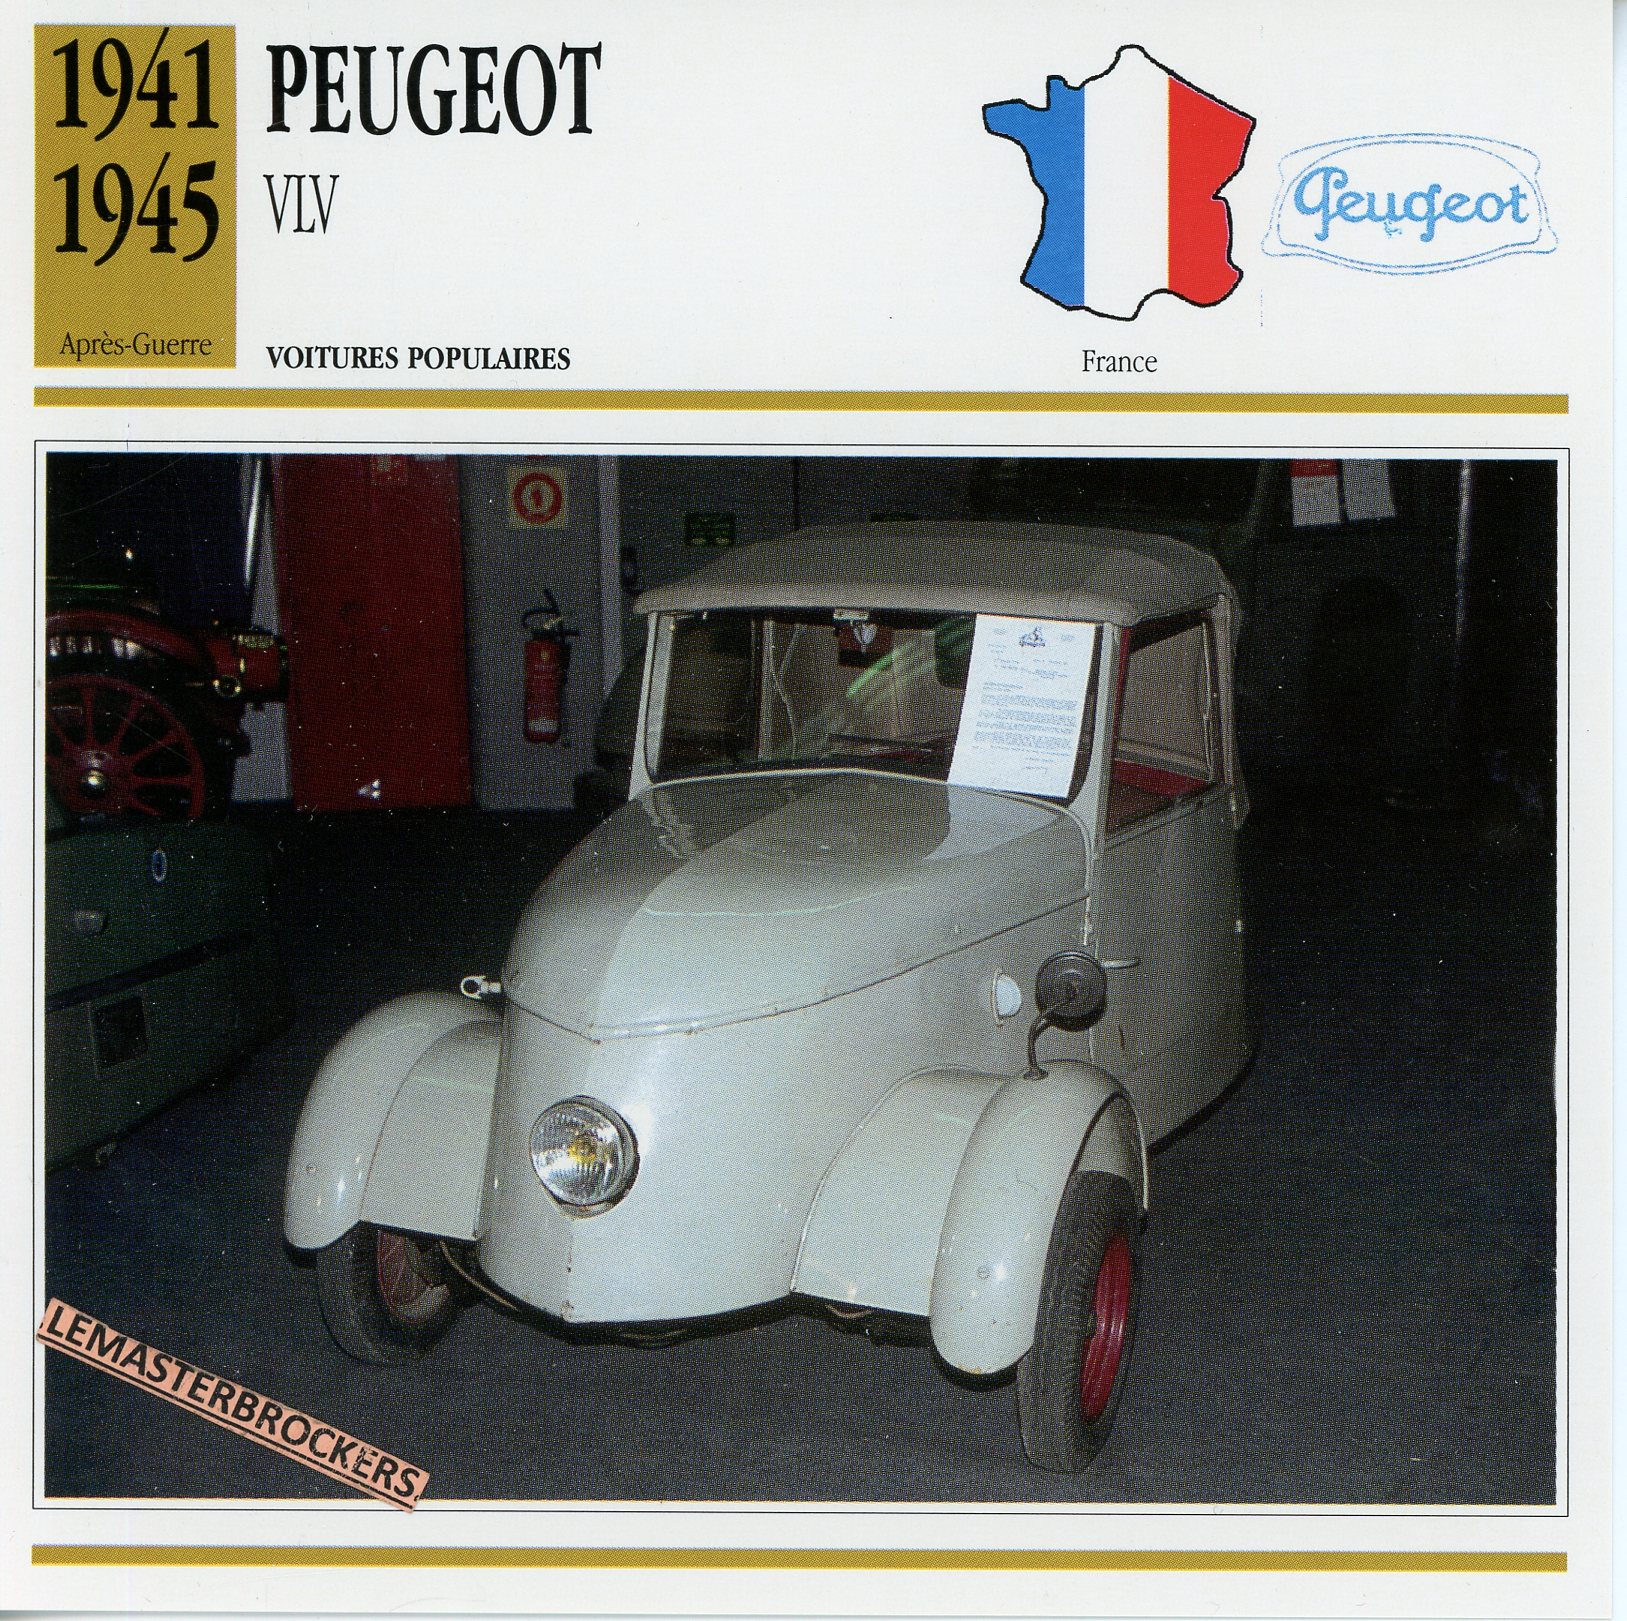 PEUGEOT-VLV-1941-1945-FICHE-AUTO-ATLAS-LEMASTERBROCKERS